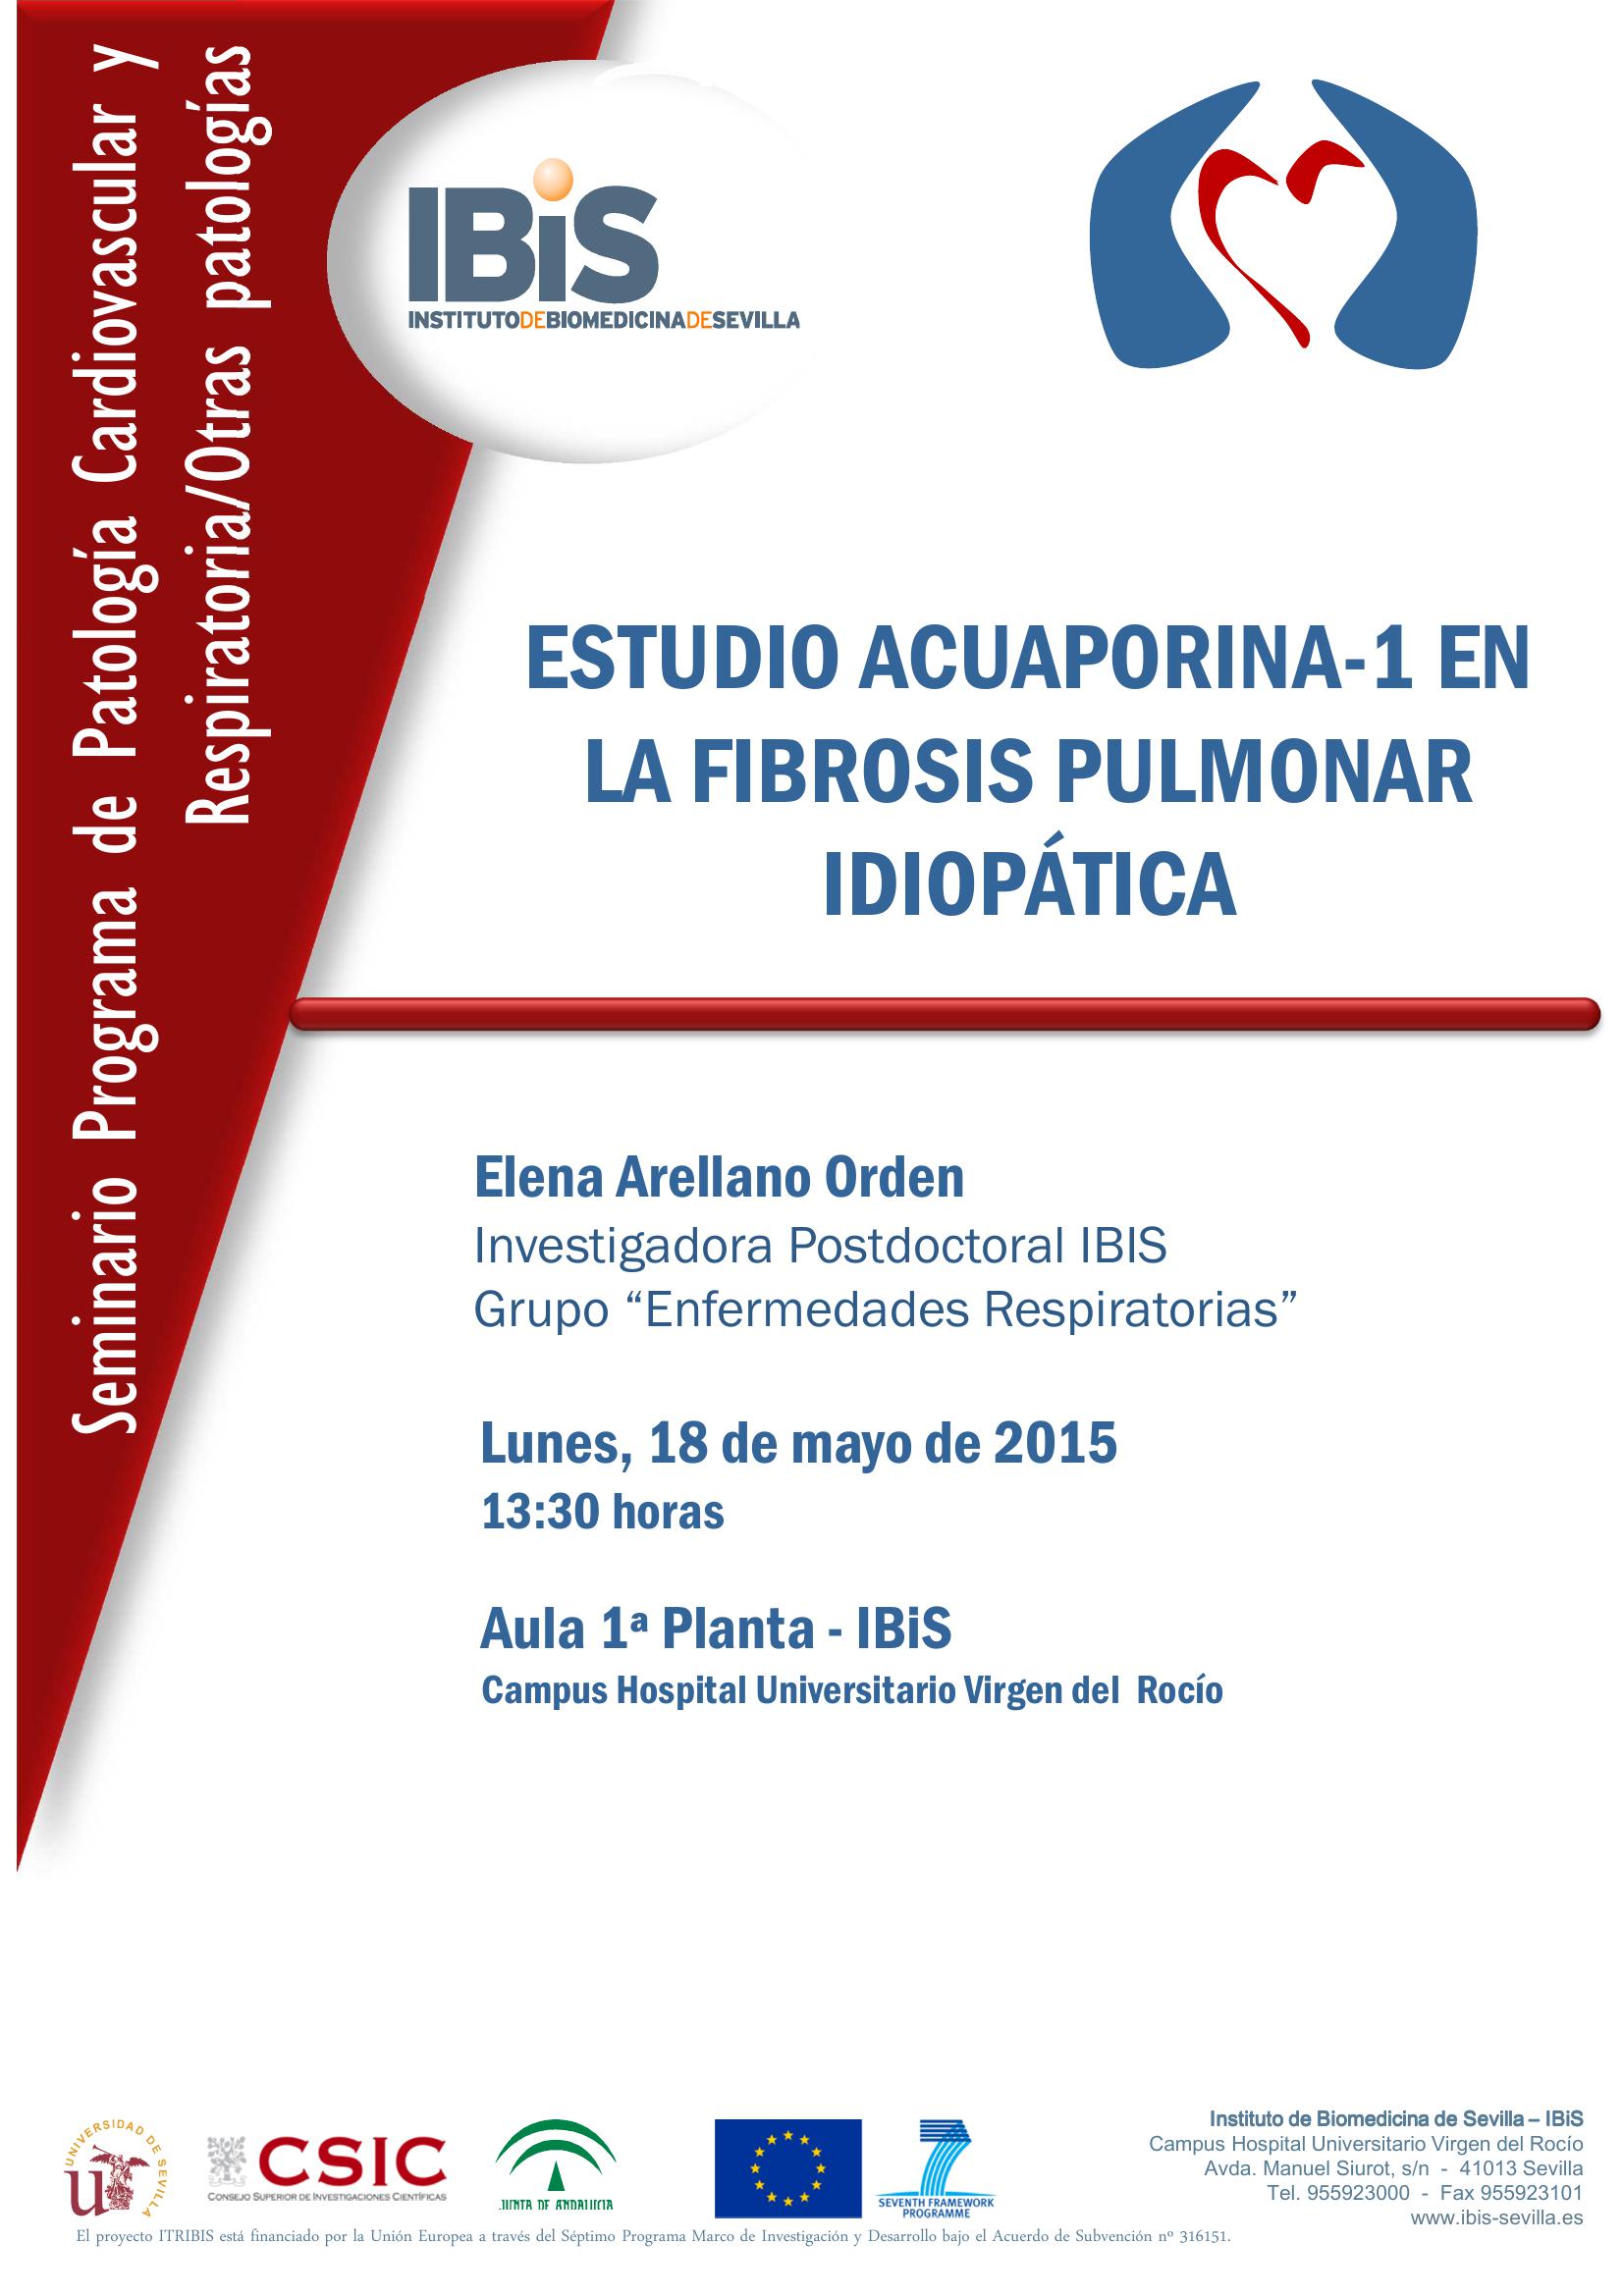 Poster: ESTUDIO ACUAPORINA-1 EN LA FIBROSIS PULMONAR IDIOPÁTICA